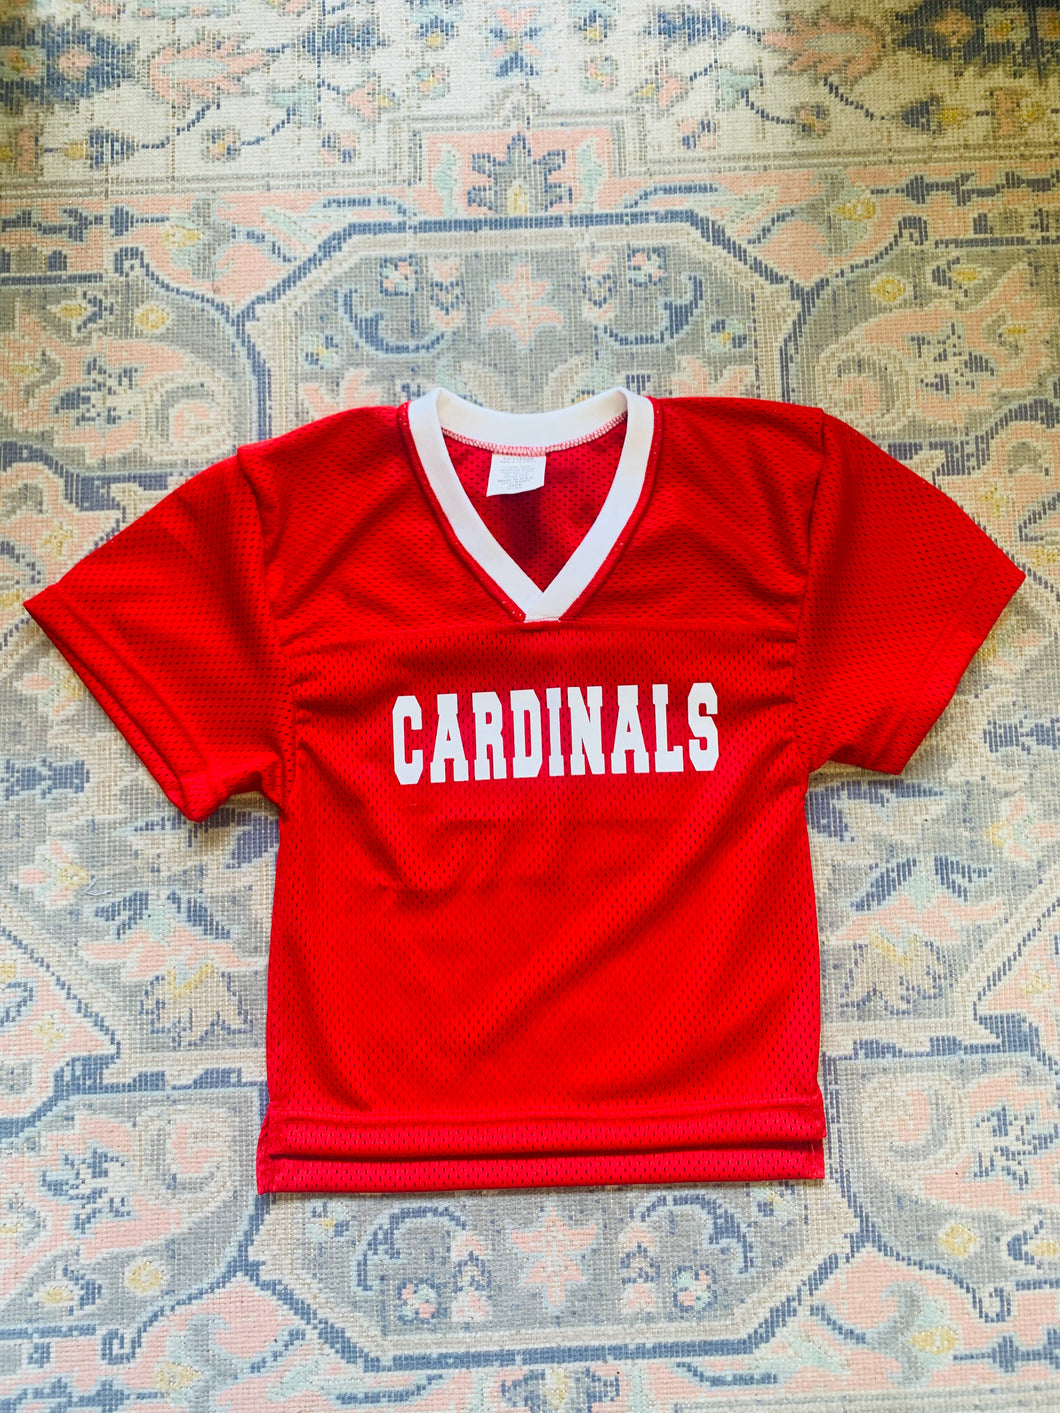 Cardinals Football Jersey